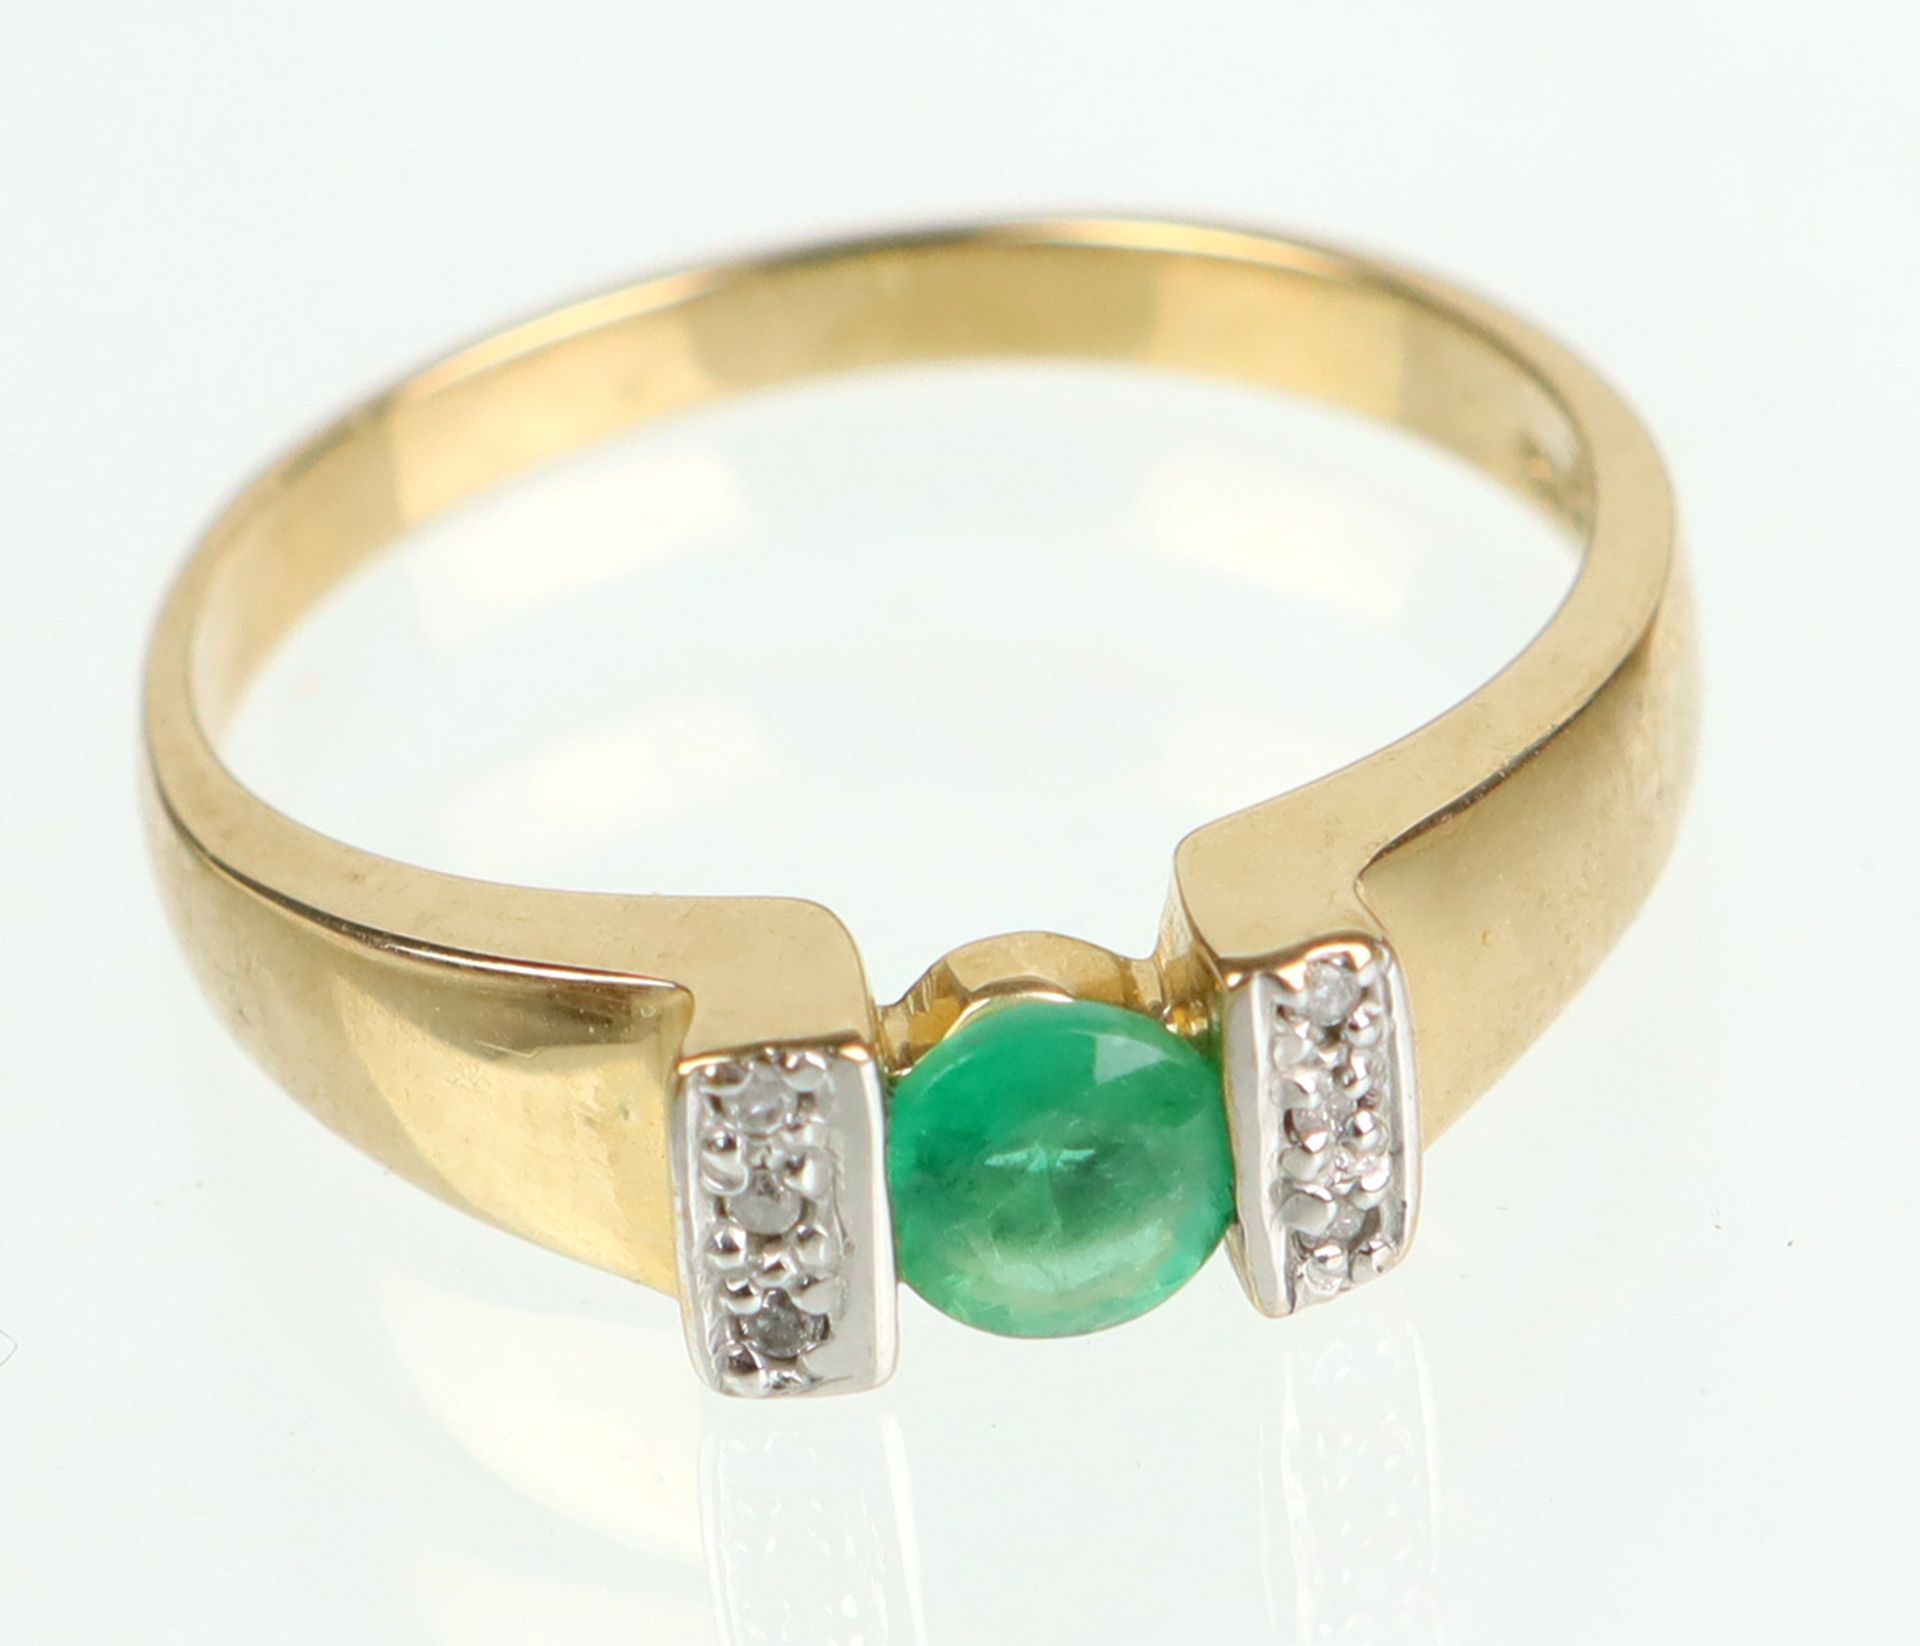 Smaragd Ring mit Brillanten - GG 375in Gelbgold 375 (9 Karat) gearbeitet u. punziert, leicht